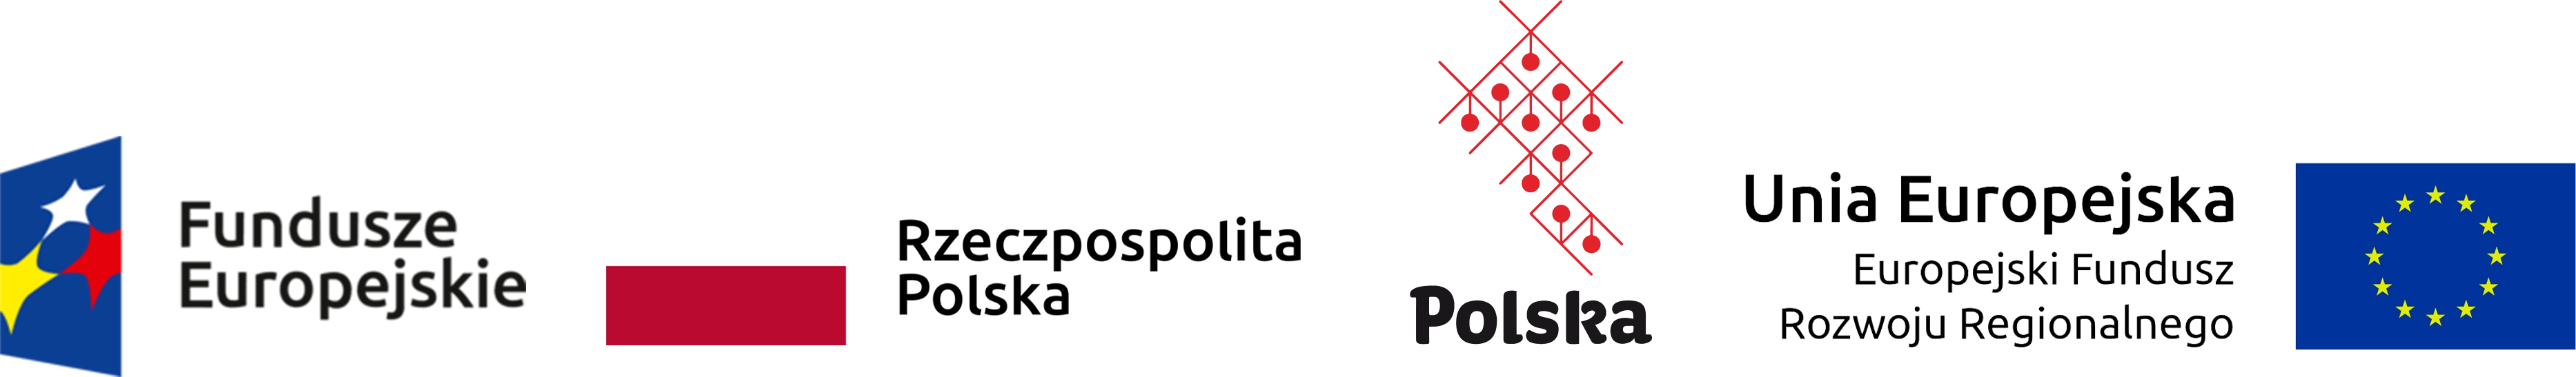 logotypy polska